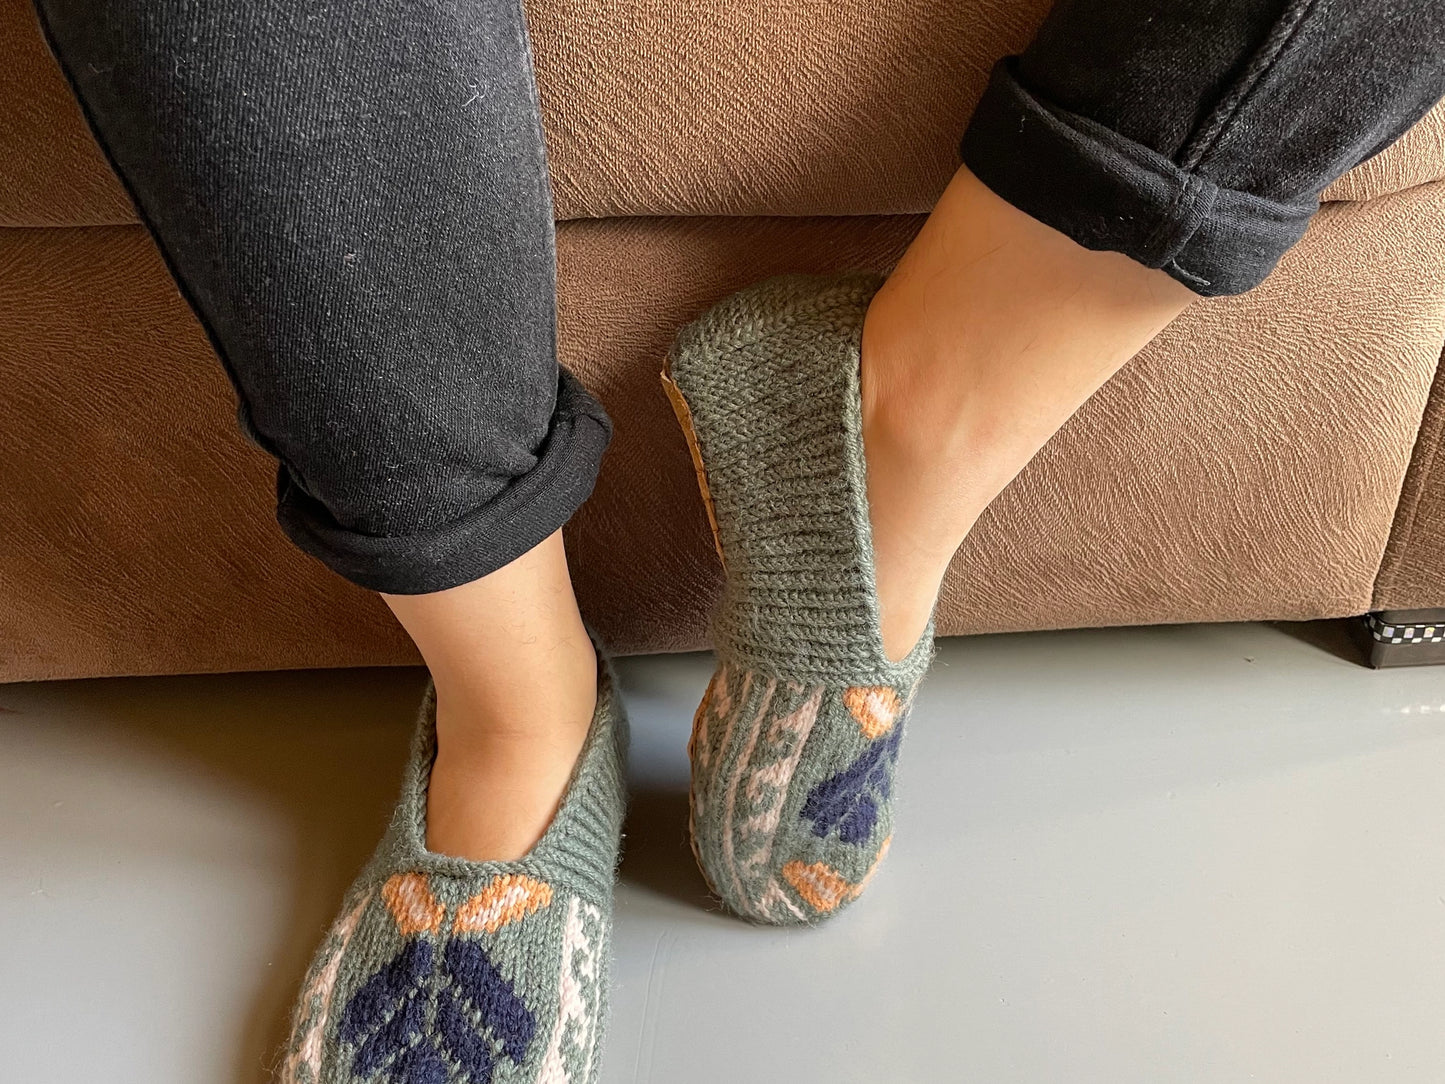 Azerbaijani Socks  - Adult Slipper Socks : Soft Teal